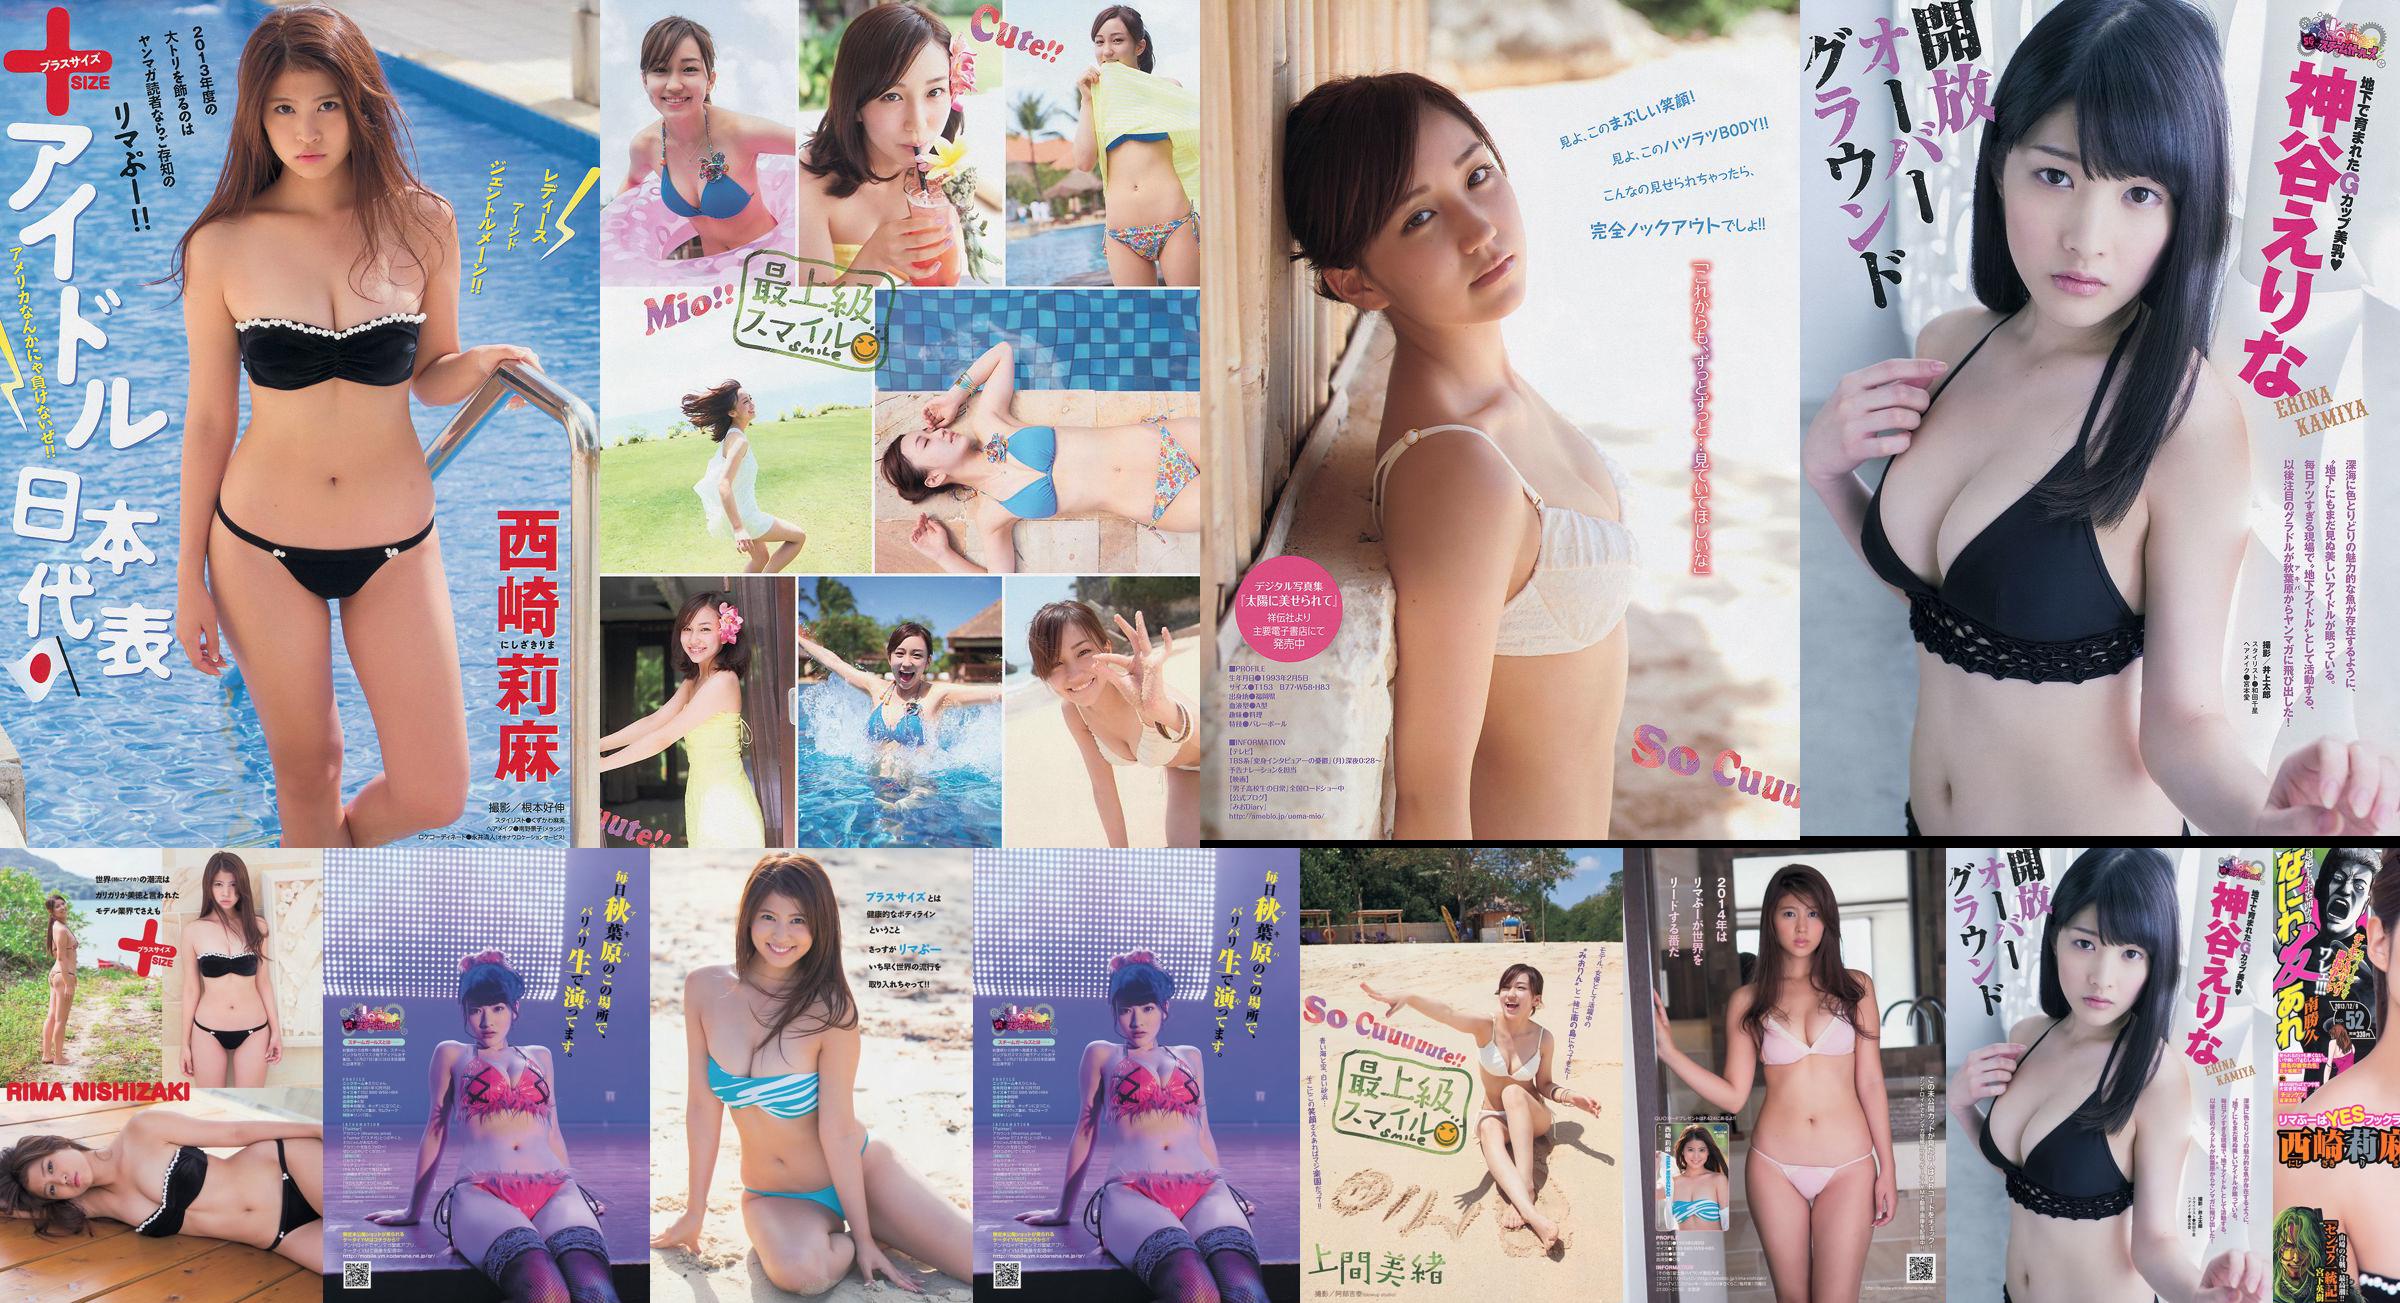 [Young Magazine] Rima Nishizaki Mio Uema Erina Kamiya 2013 No.52 Photo Moshi No.69af60 Page 1